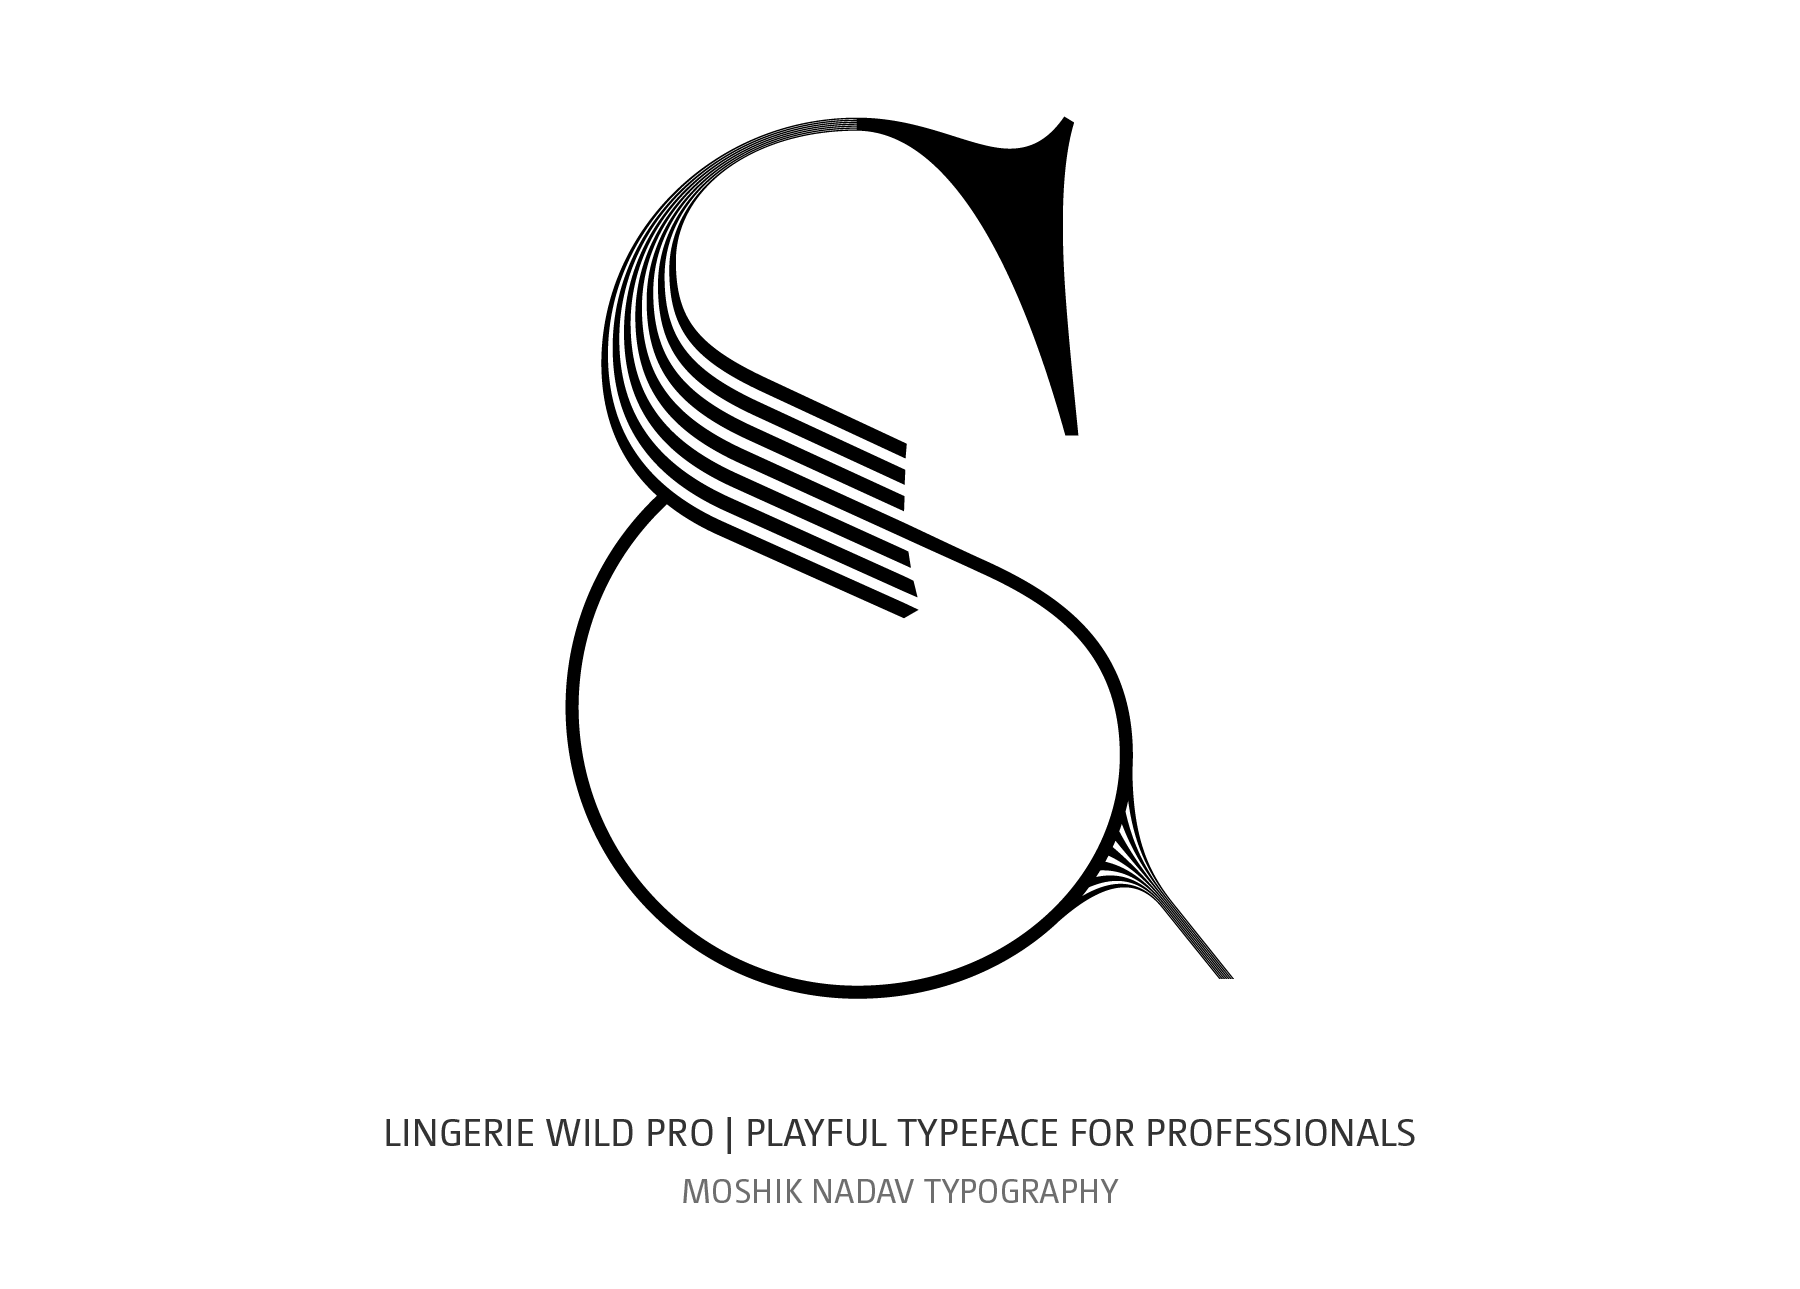 Super sexy ampersand designed by Moshik Nadav Typography NYC